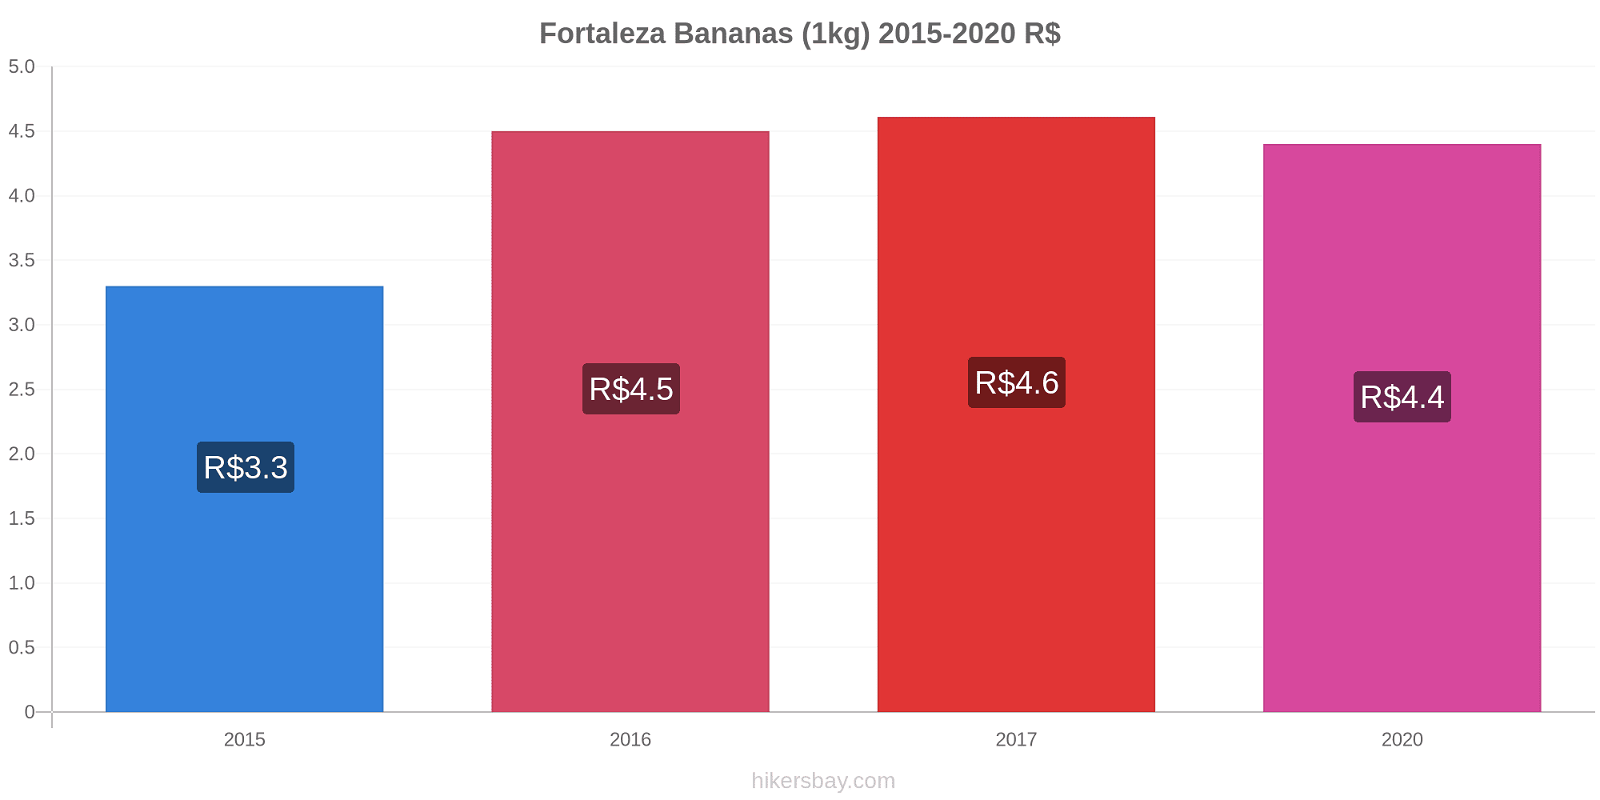 Fortaleza variação de preço Banana (1kg) hikersbay.com